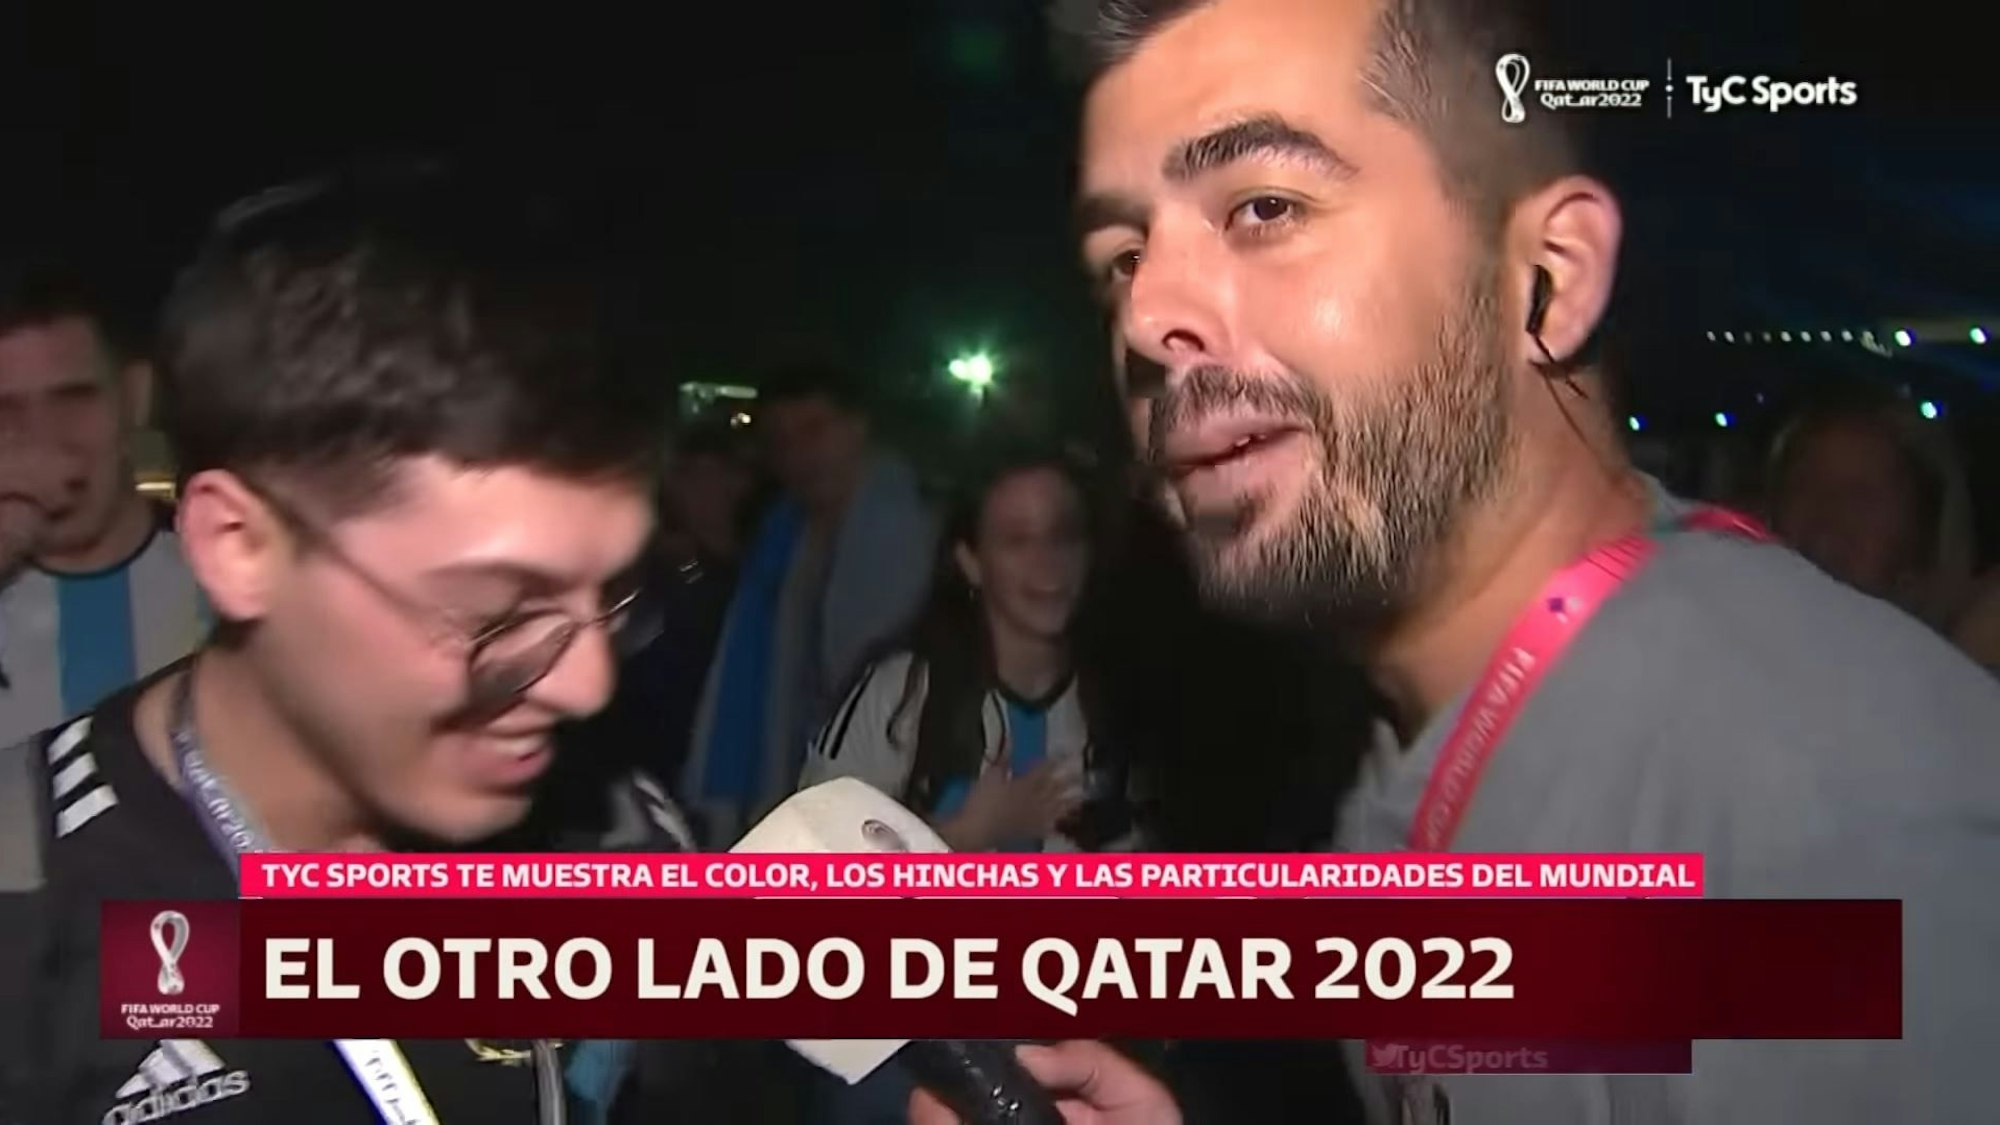 Der argentinische TV-Reporter Matias Pelliccioni berichtet über argentinische Fans, die bereits zur WM nach Katar gereist sind. Screenshot des Berichts vom Sender TyC Sports 